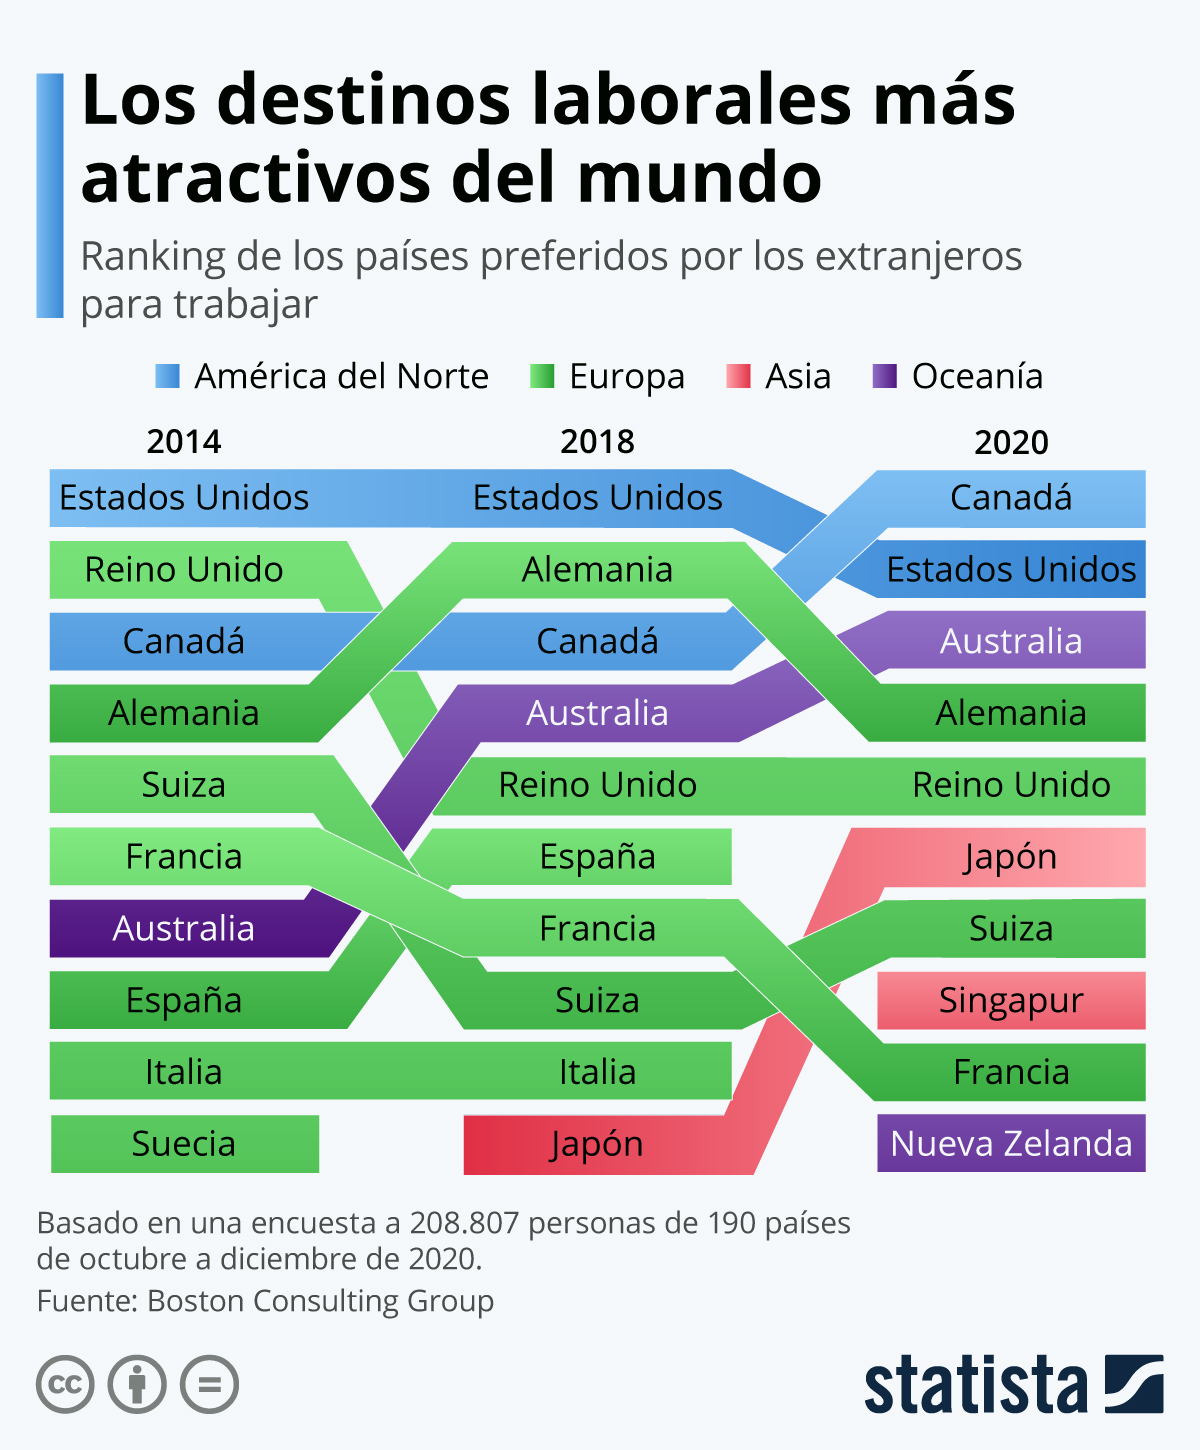 Los destinos laborales más atractivos del mundo 2020 #infografia #rrhh